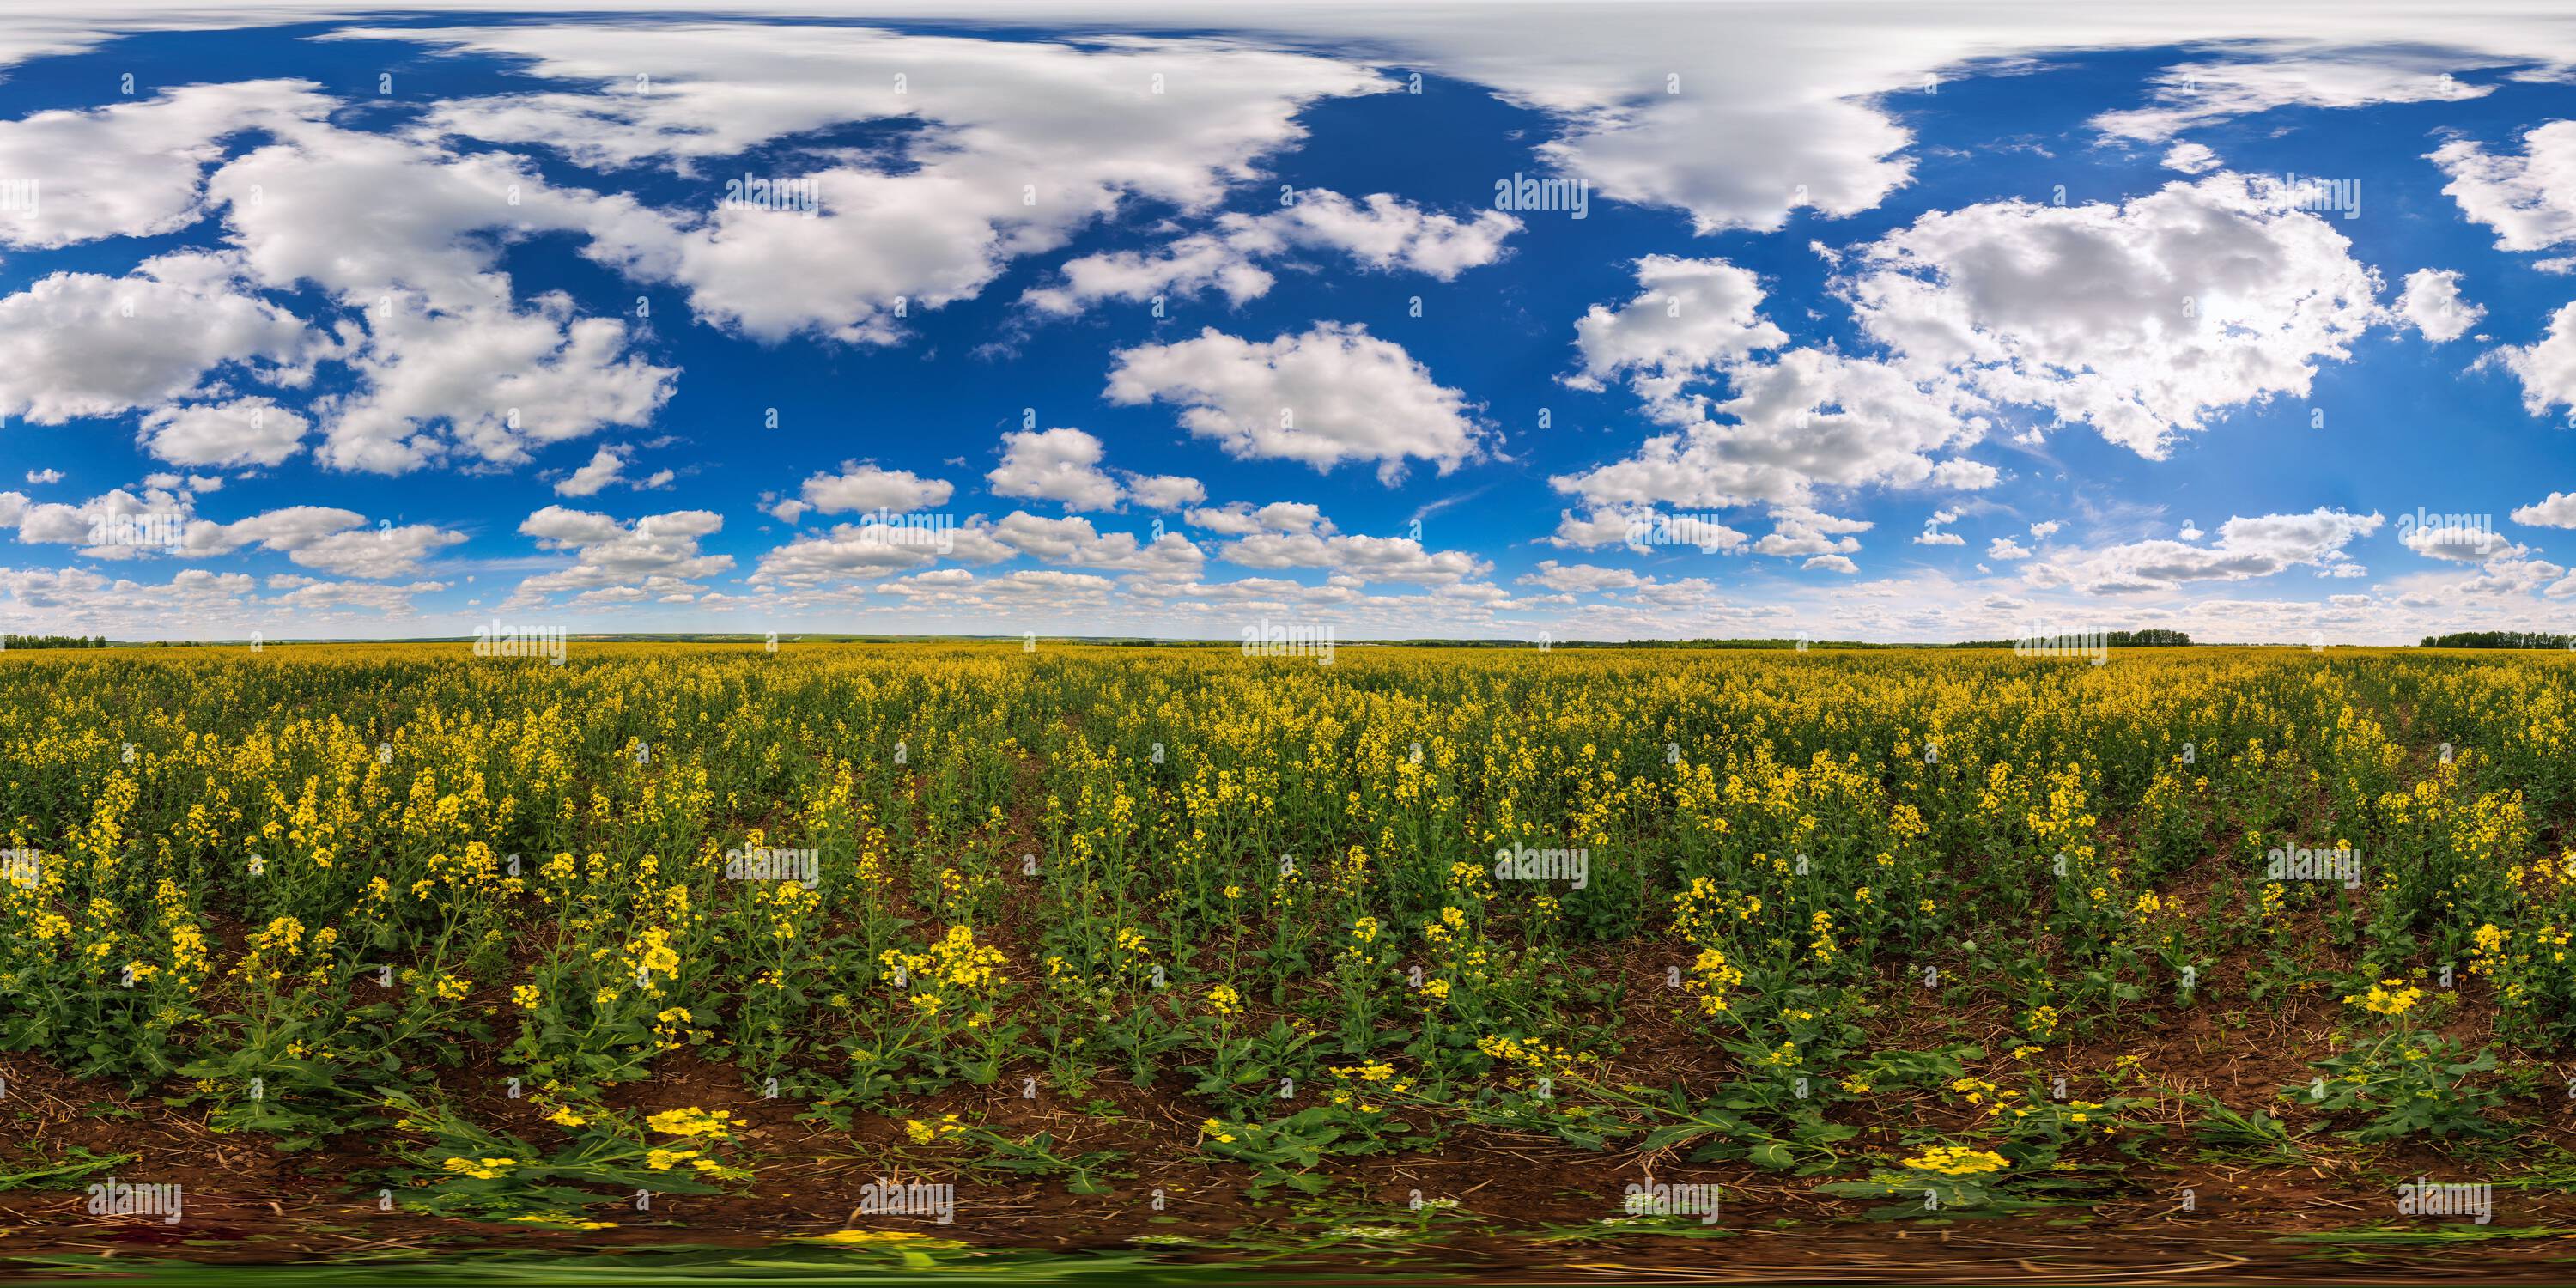 Vista panorámica en 360 grados de 360 por 180 sin costuras grado completo panorama esférico del día de verano flor de campo colza amarillo de semilla de rape en proyección eqirrectangular